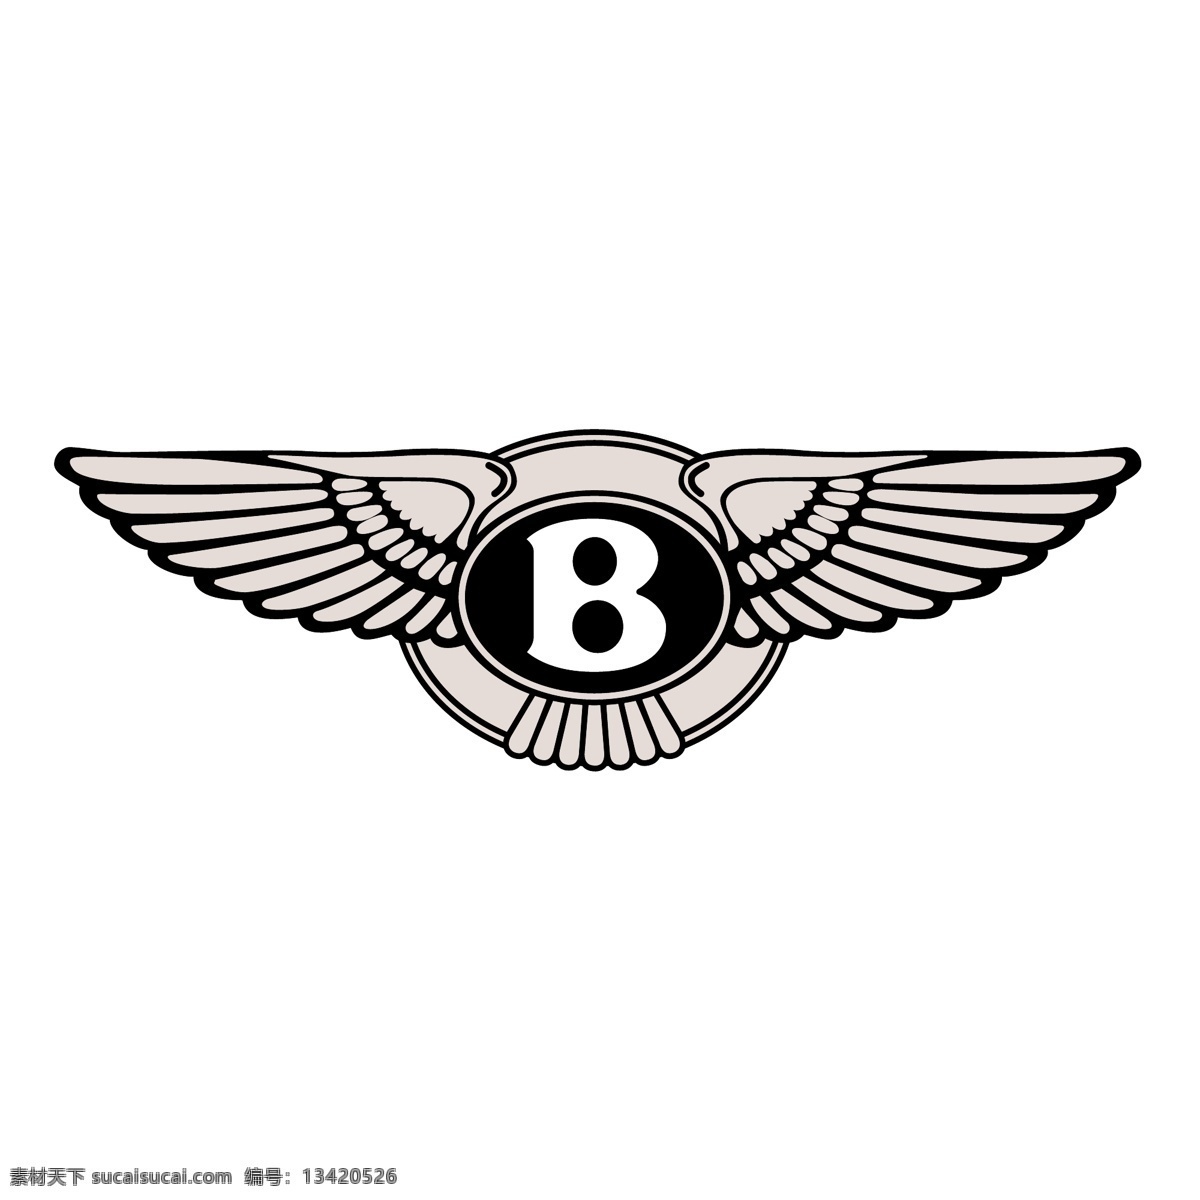 宾利 汽车 公司 标志 标识为免费 psd源文件 logo设计